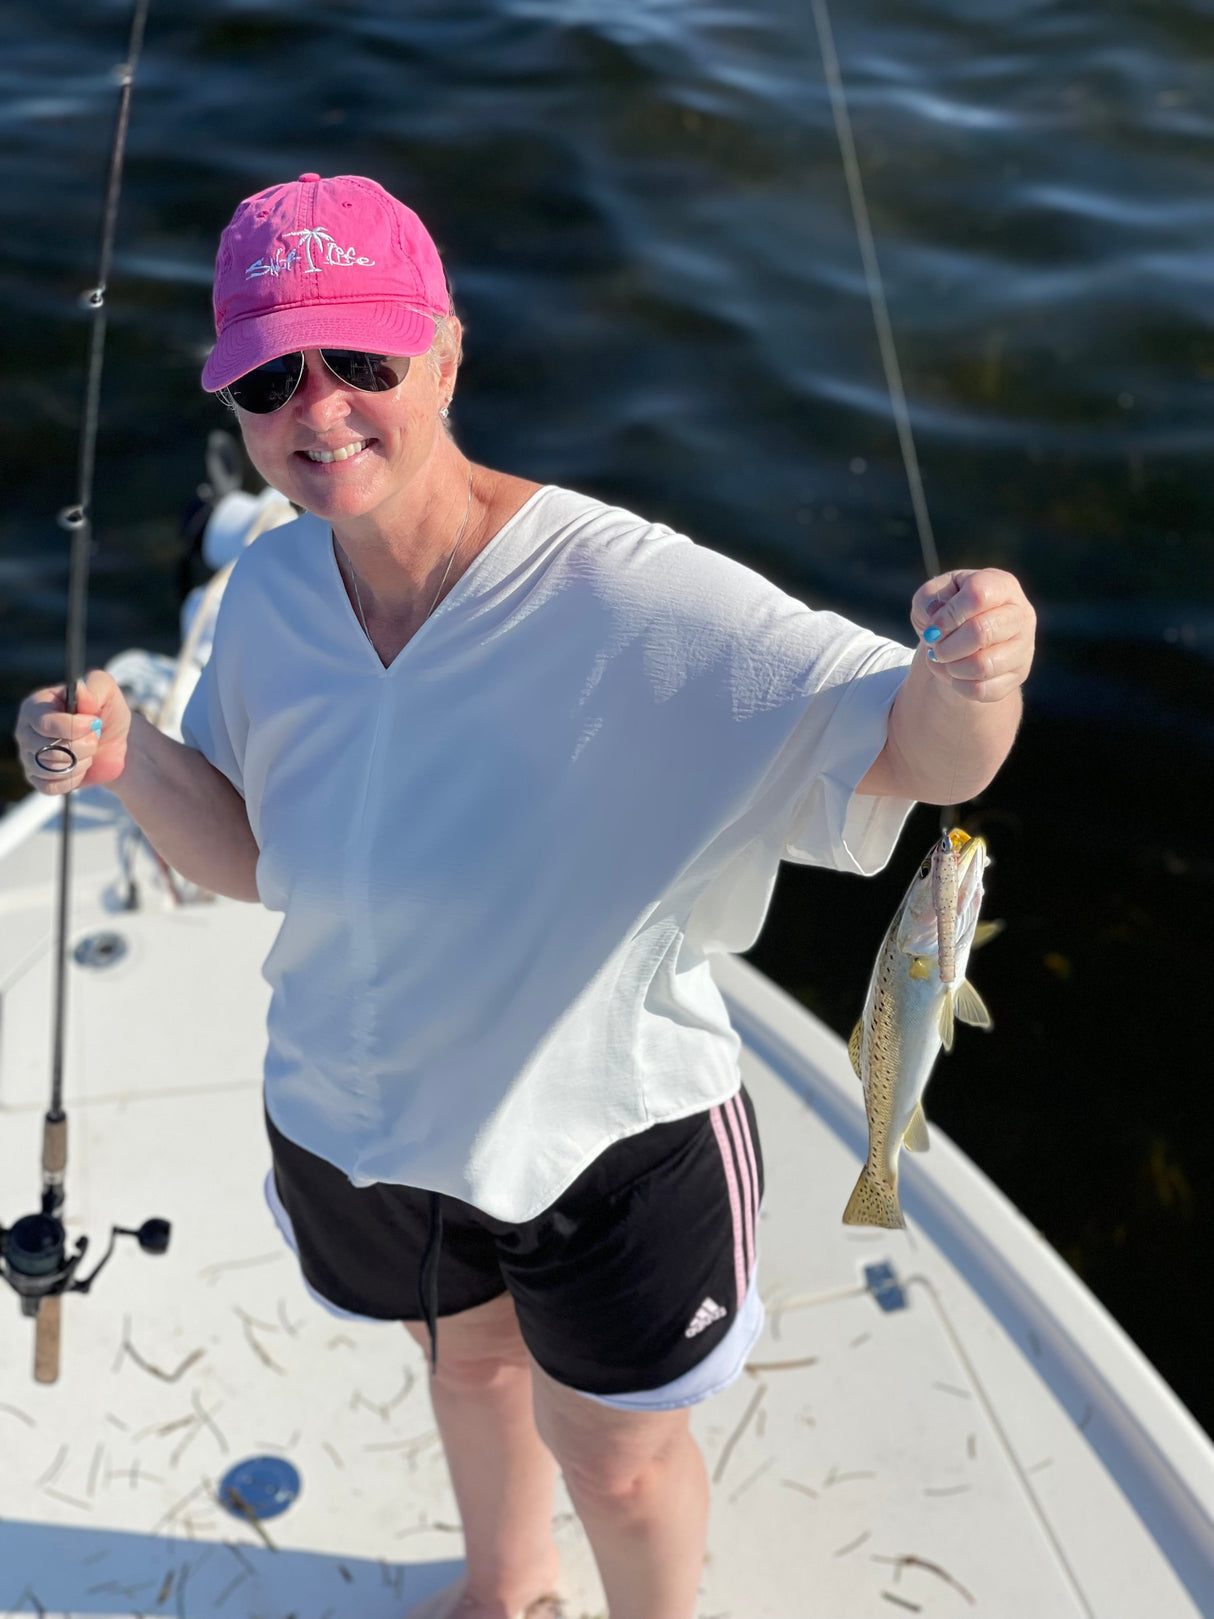 North Florida Redfish & Trout Fishing: 6 Hr Trip $650 [30% BOOKING DEPOSIT]